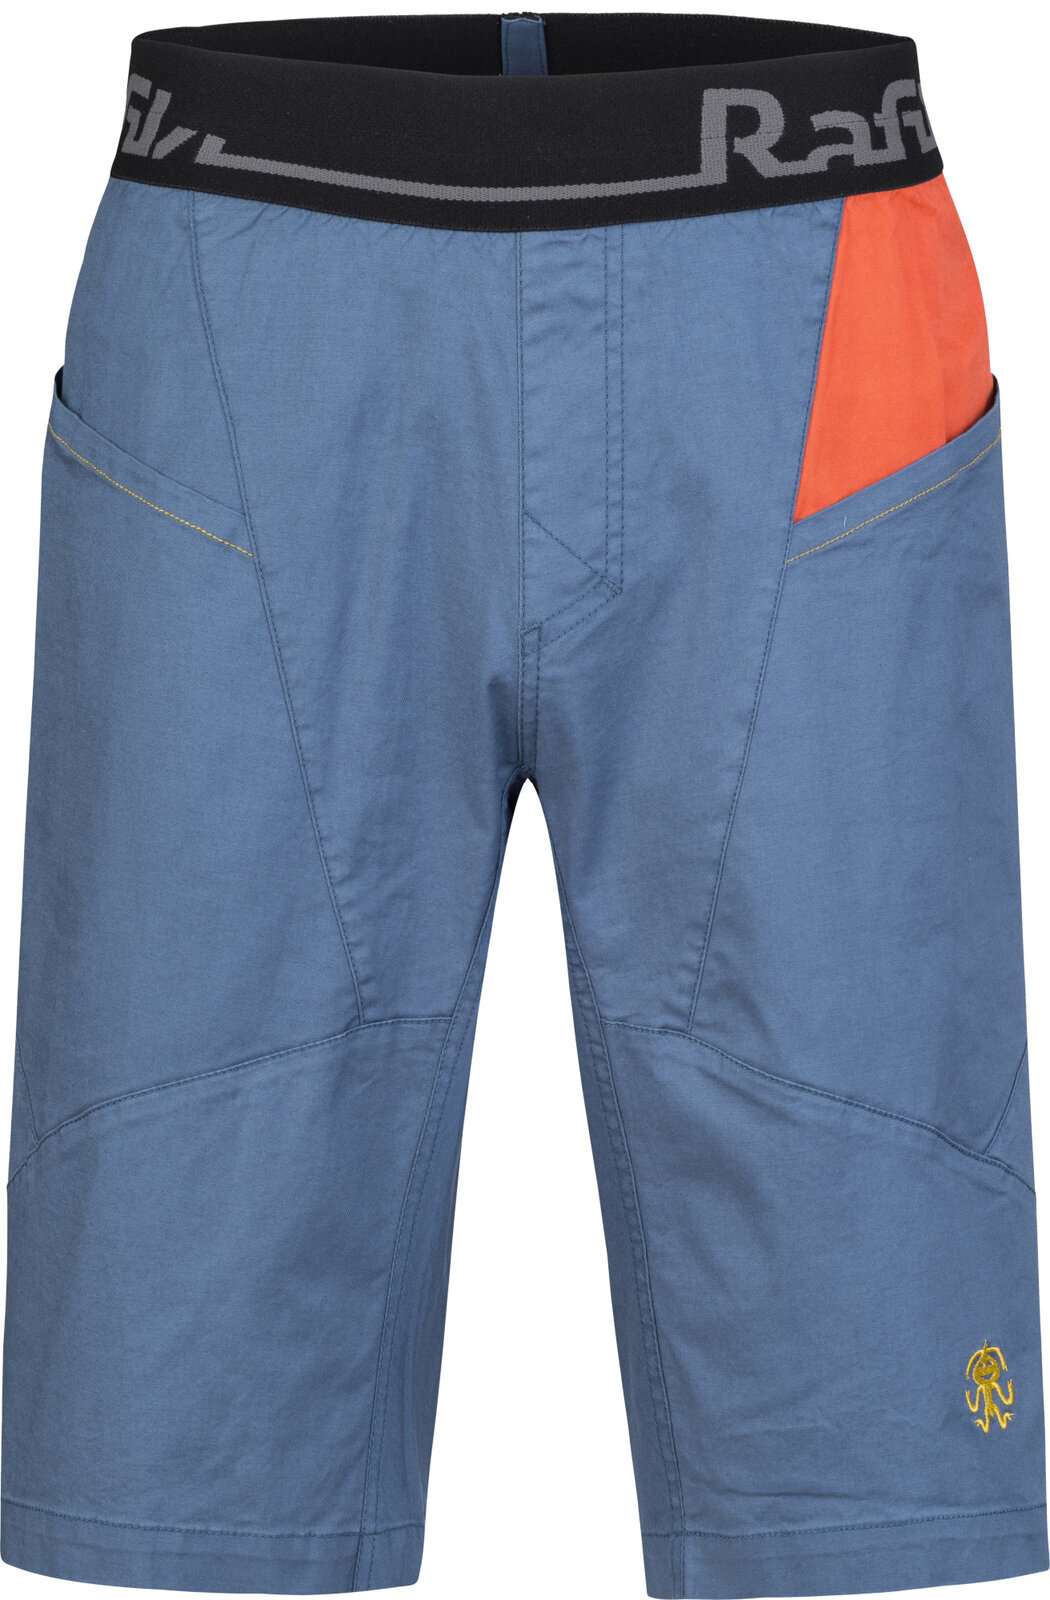 Shorts outdoor Rafiki Megos Man Shorts Ensign Blue/Clay M Shorts outdoor